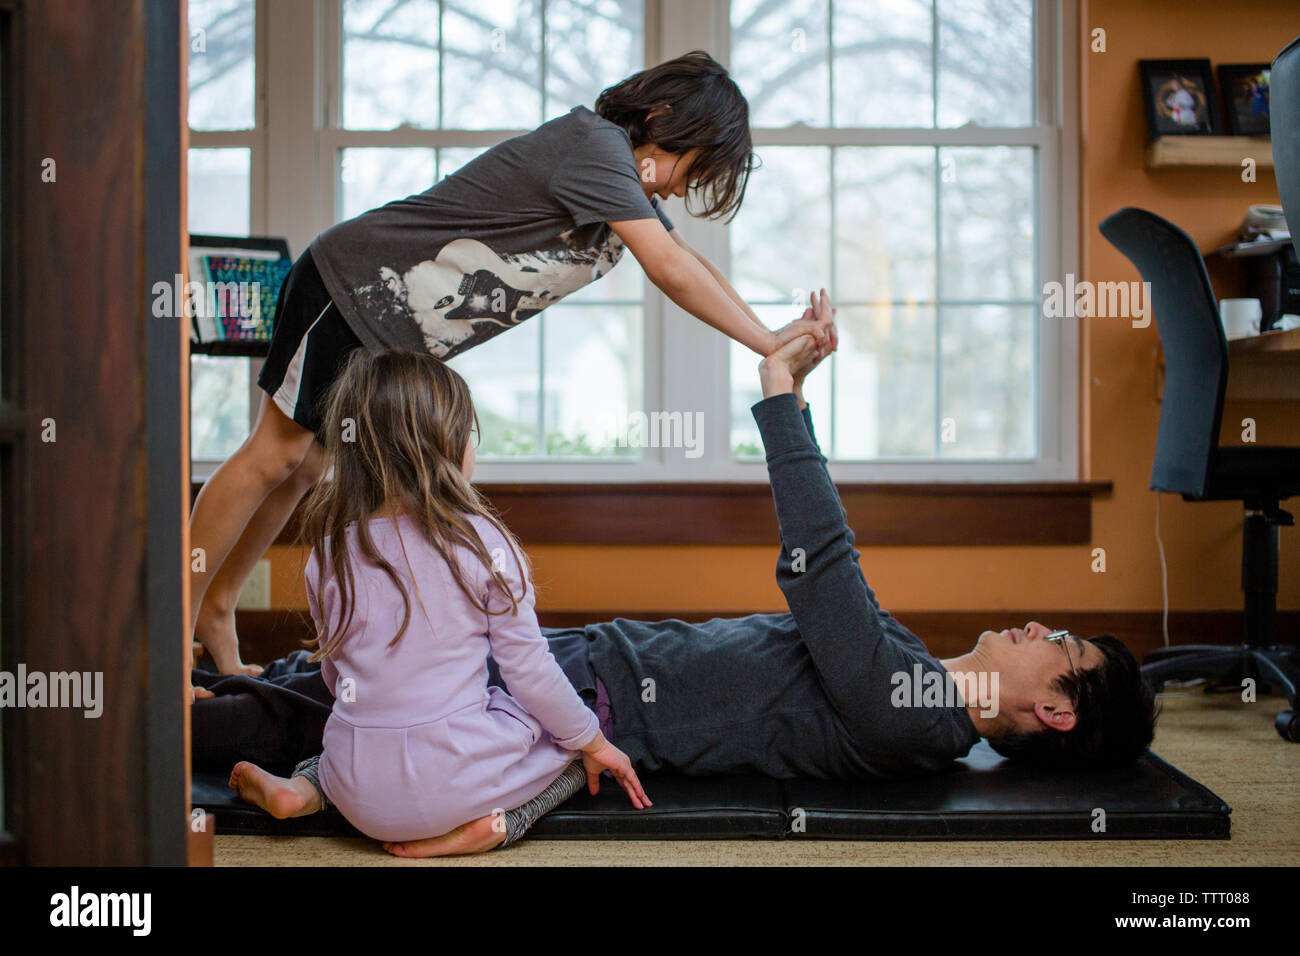 Un père fait l'exercice avec ses deux petits enfants à l'intérieur d'une maison Banque D'Images